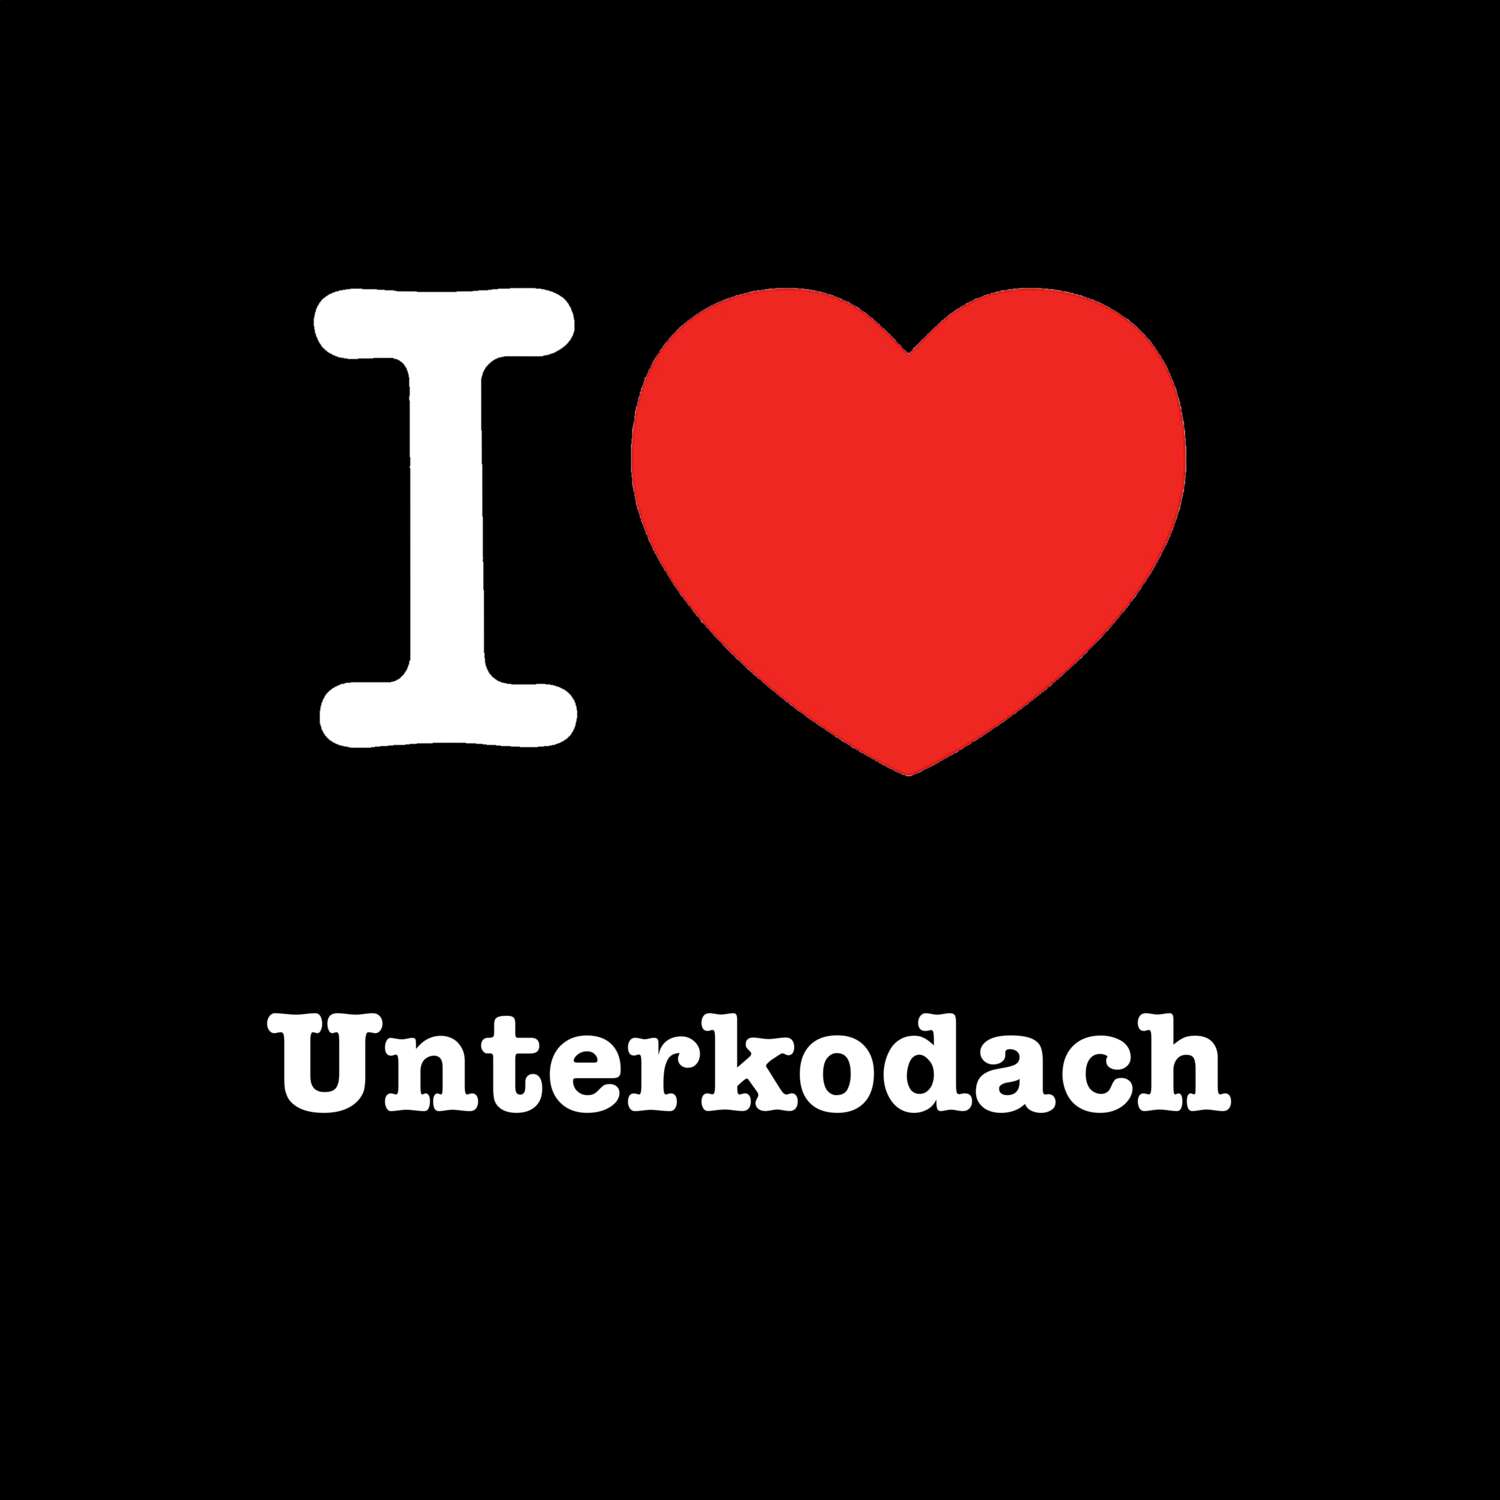 Unterkodach T-Shirt »I love«